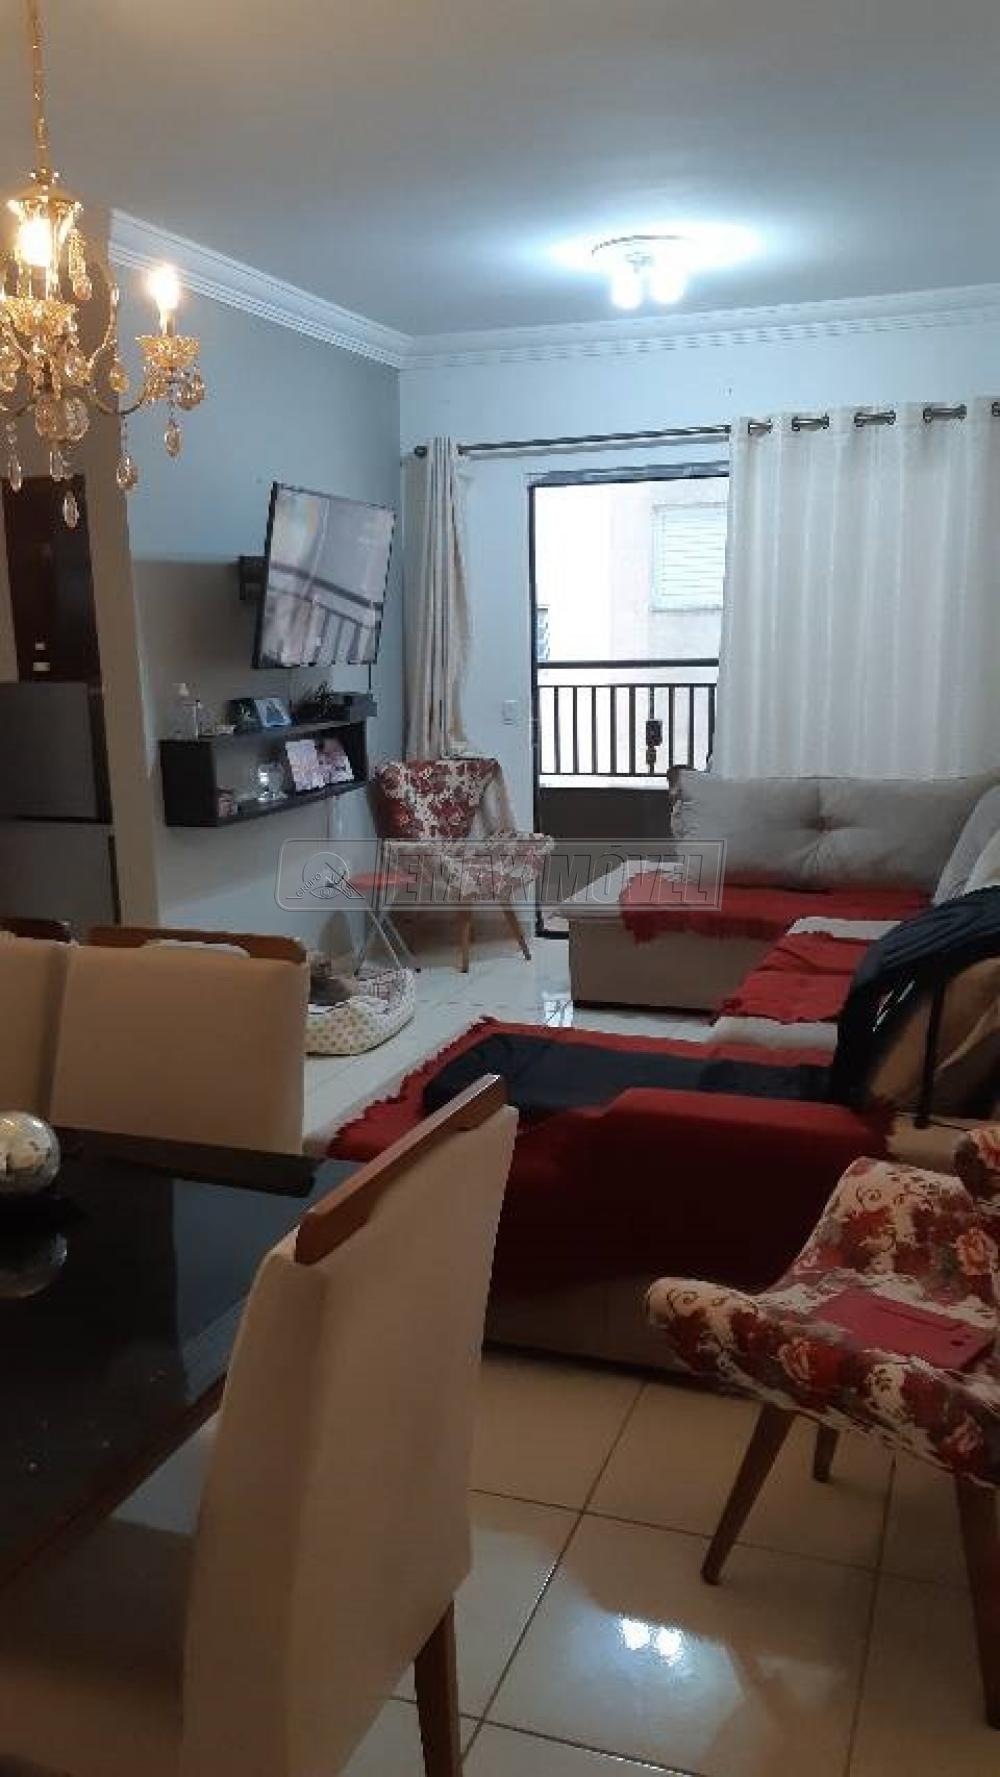 Alugar Apartamento / Padrão em Sorocaba R$ 1.300,00 - Foto 5